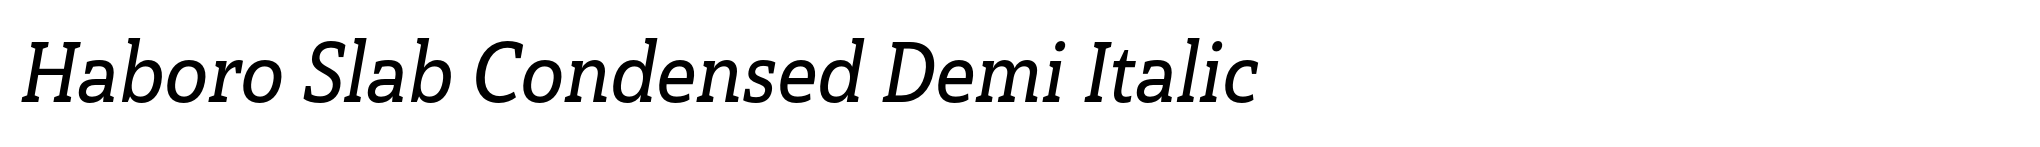 Haboro Slab Condensed Demi Italic image